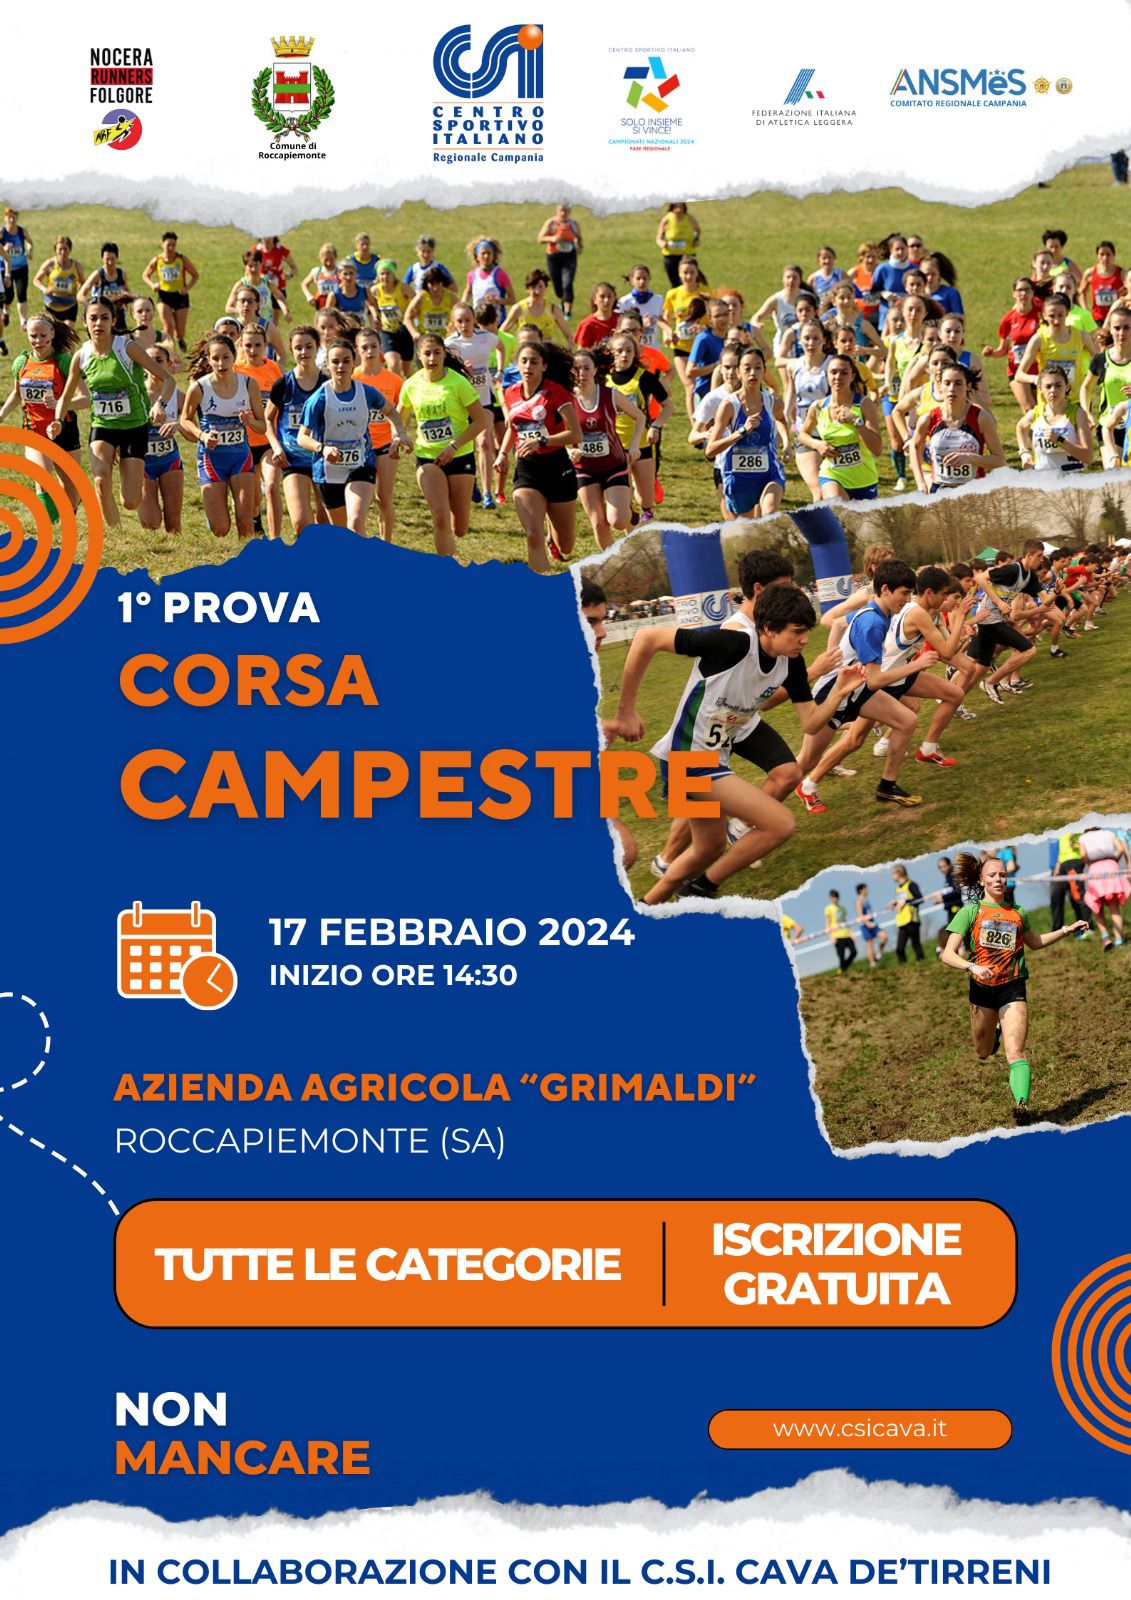 images/news/regionali/campania/2024.02.17_CORSA_CAMPESTRE_ROCCAPIEMONTE_SA.jpg